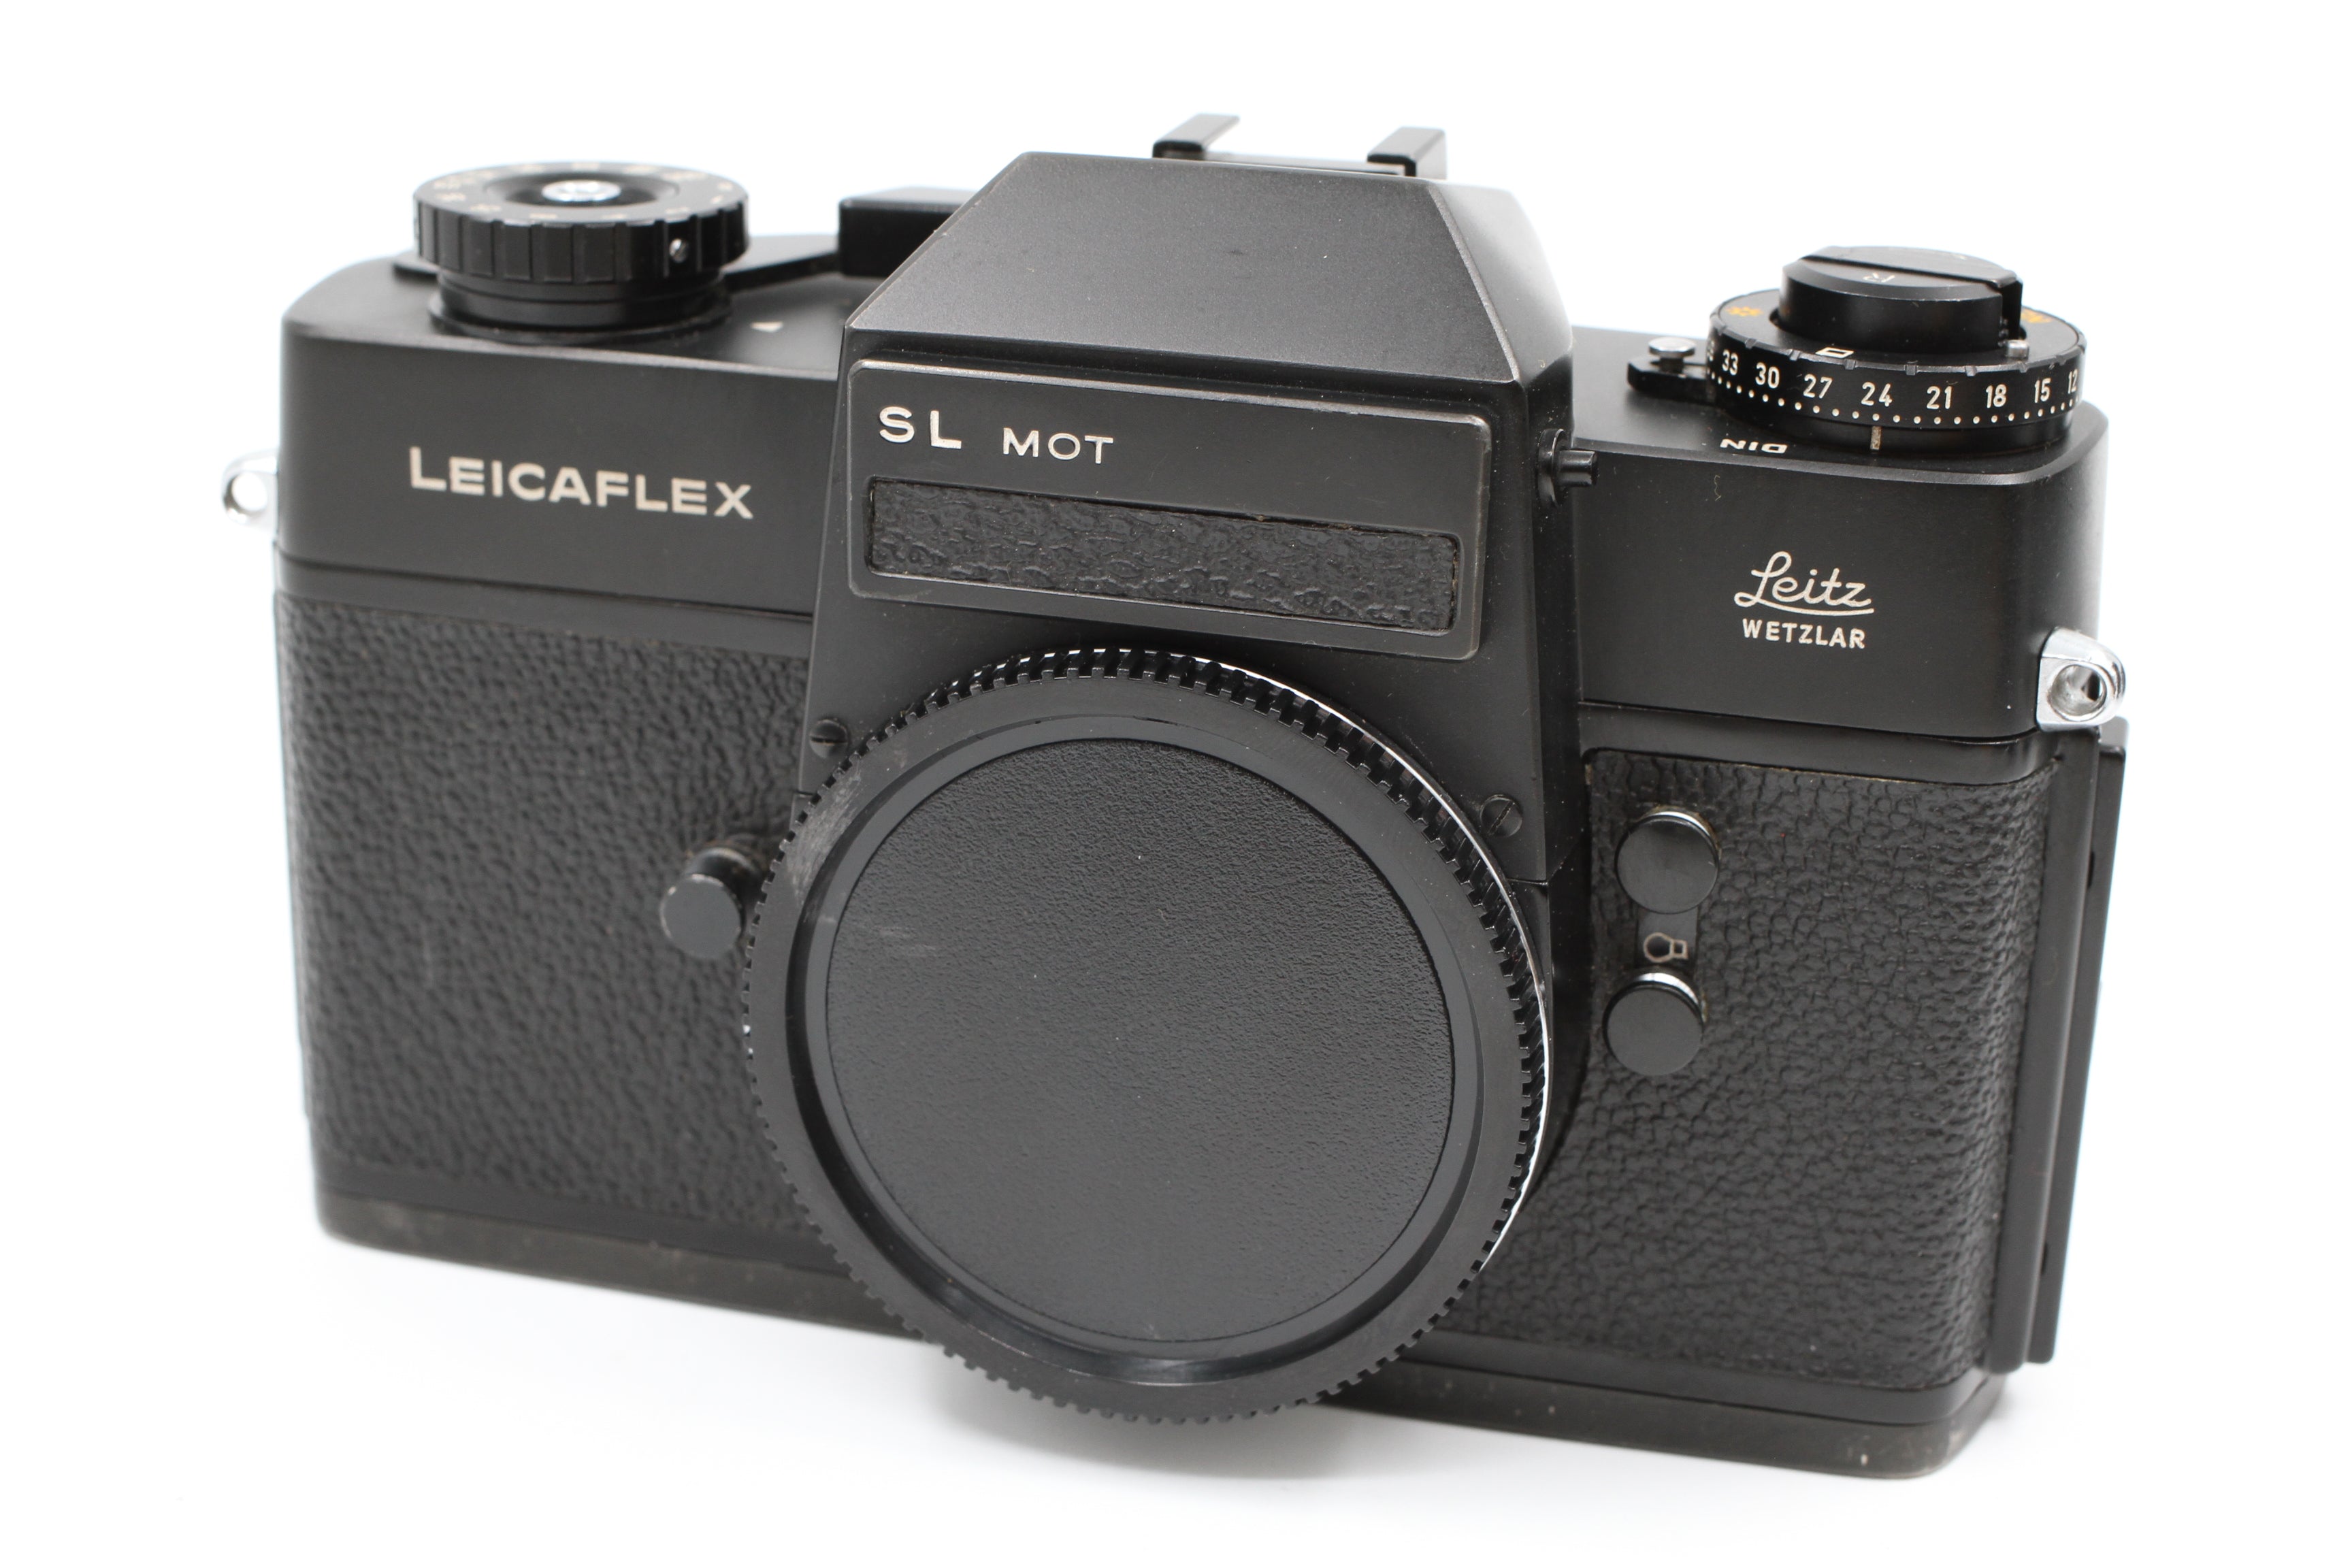 Leicaflex SL MOT 35mm Black Chrome Body w/ Leicaflex Motor